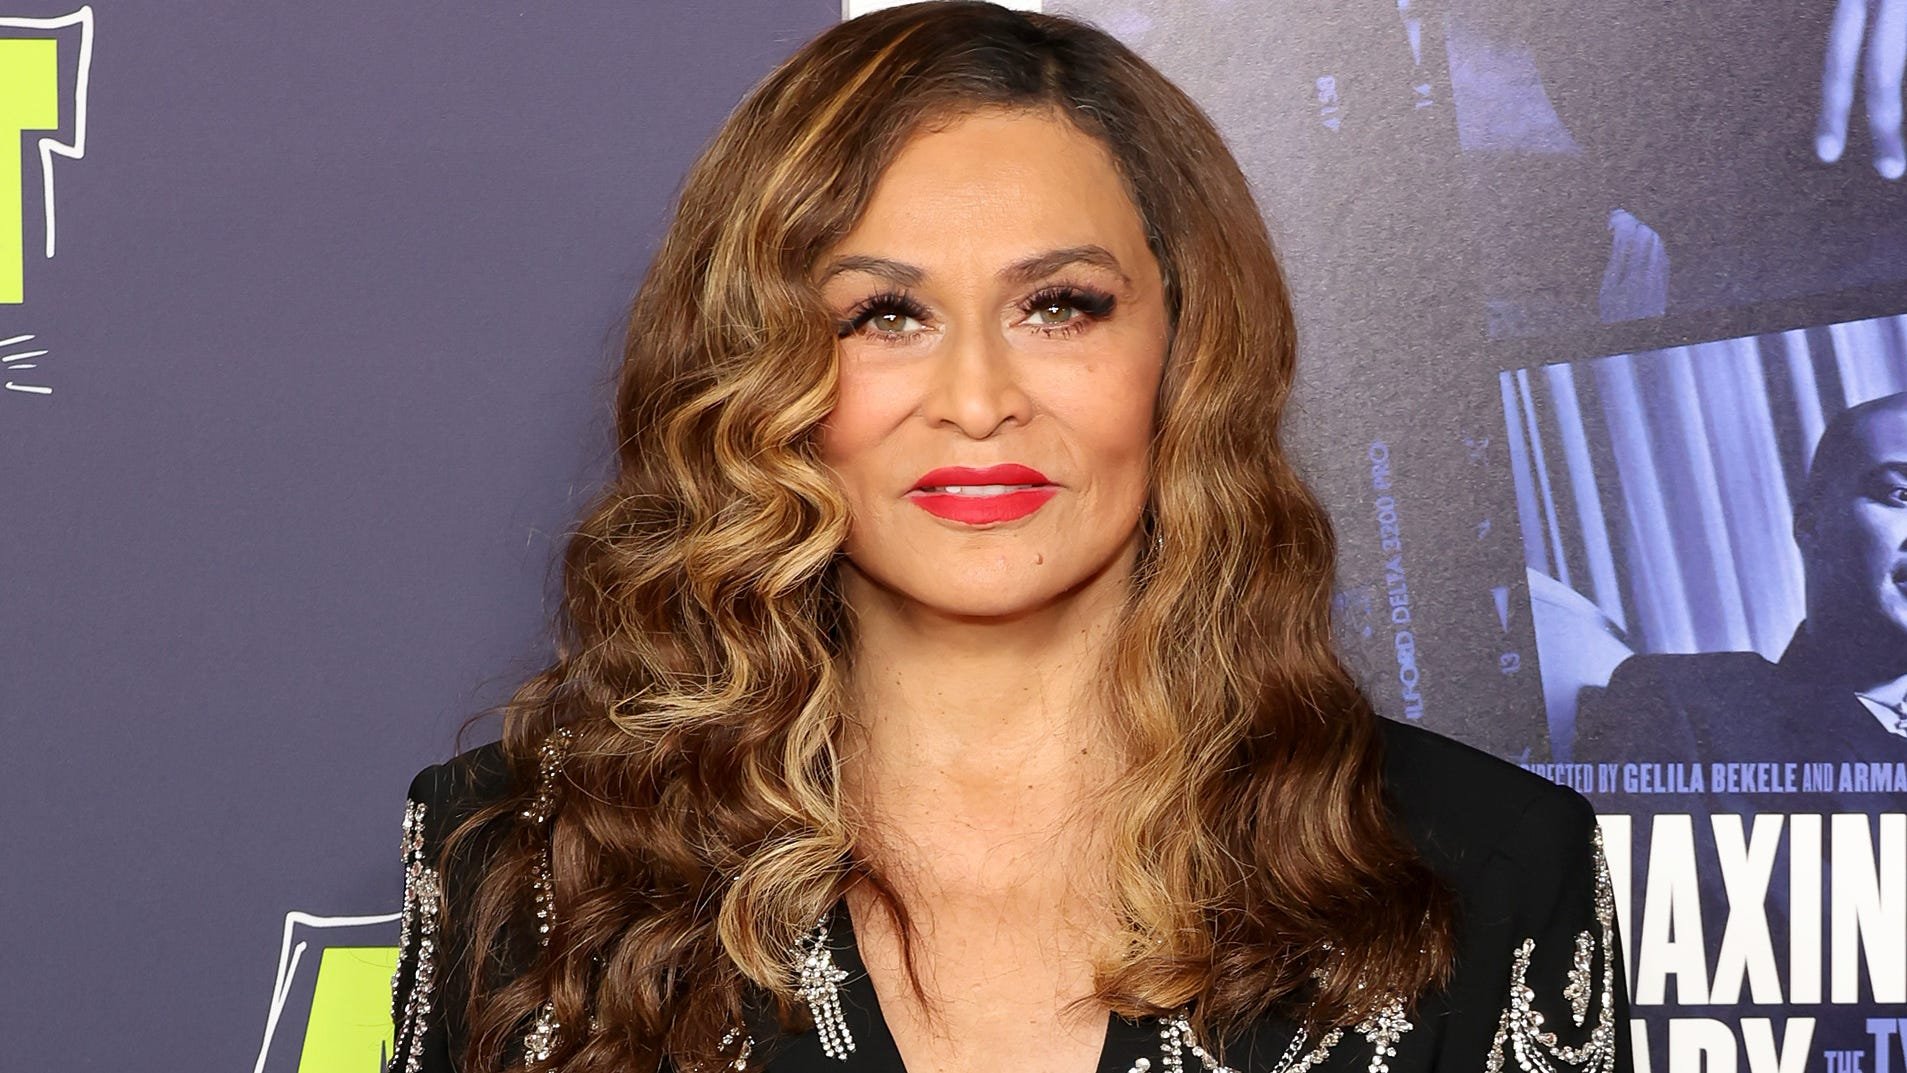 Tina Knowles defends Beyoncé against 'racist statements' about 'Renaissance' premiere look